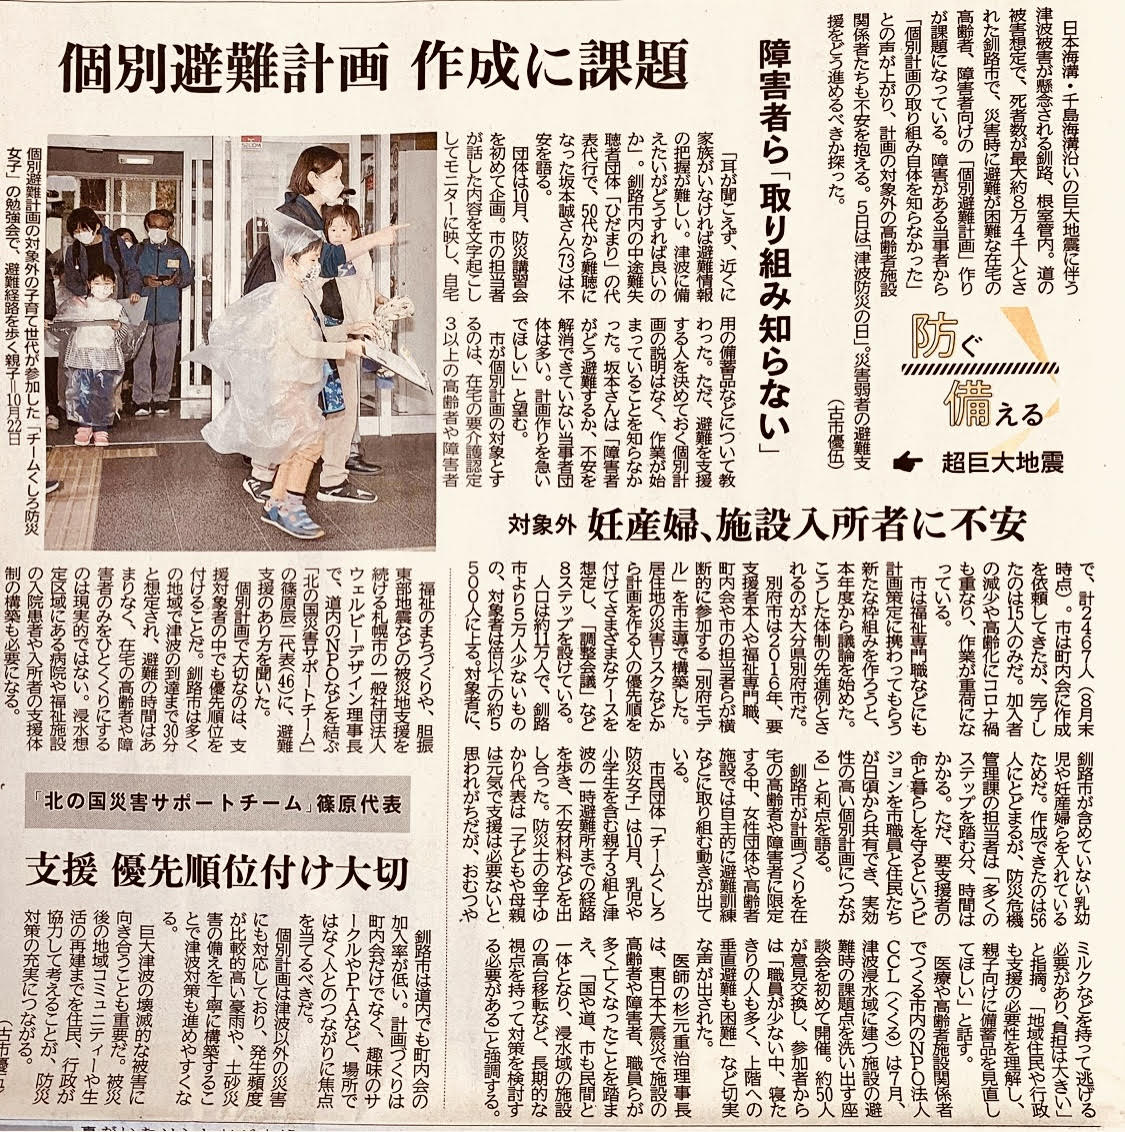 防災に関する取組とコメントが北海道新聞に掲載されました